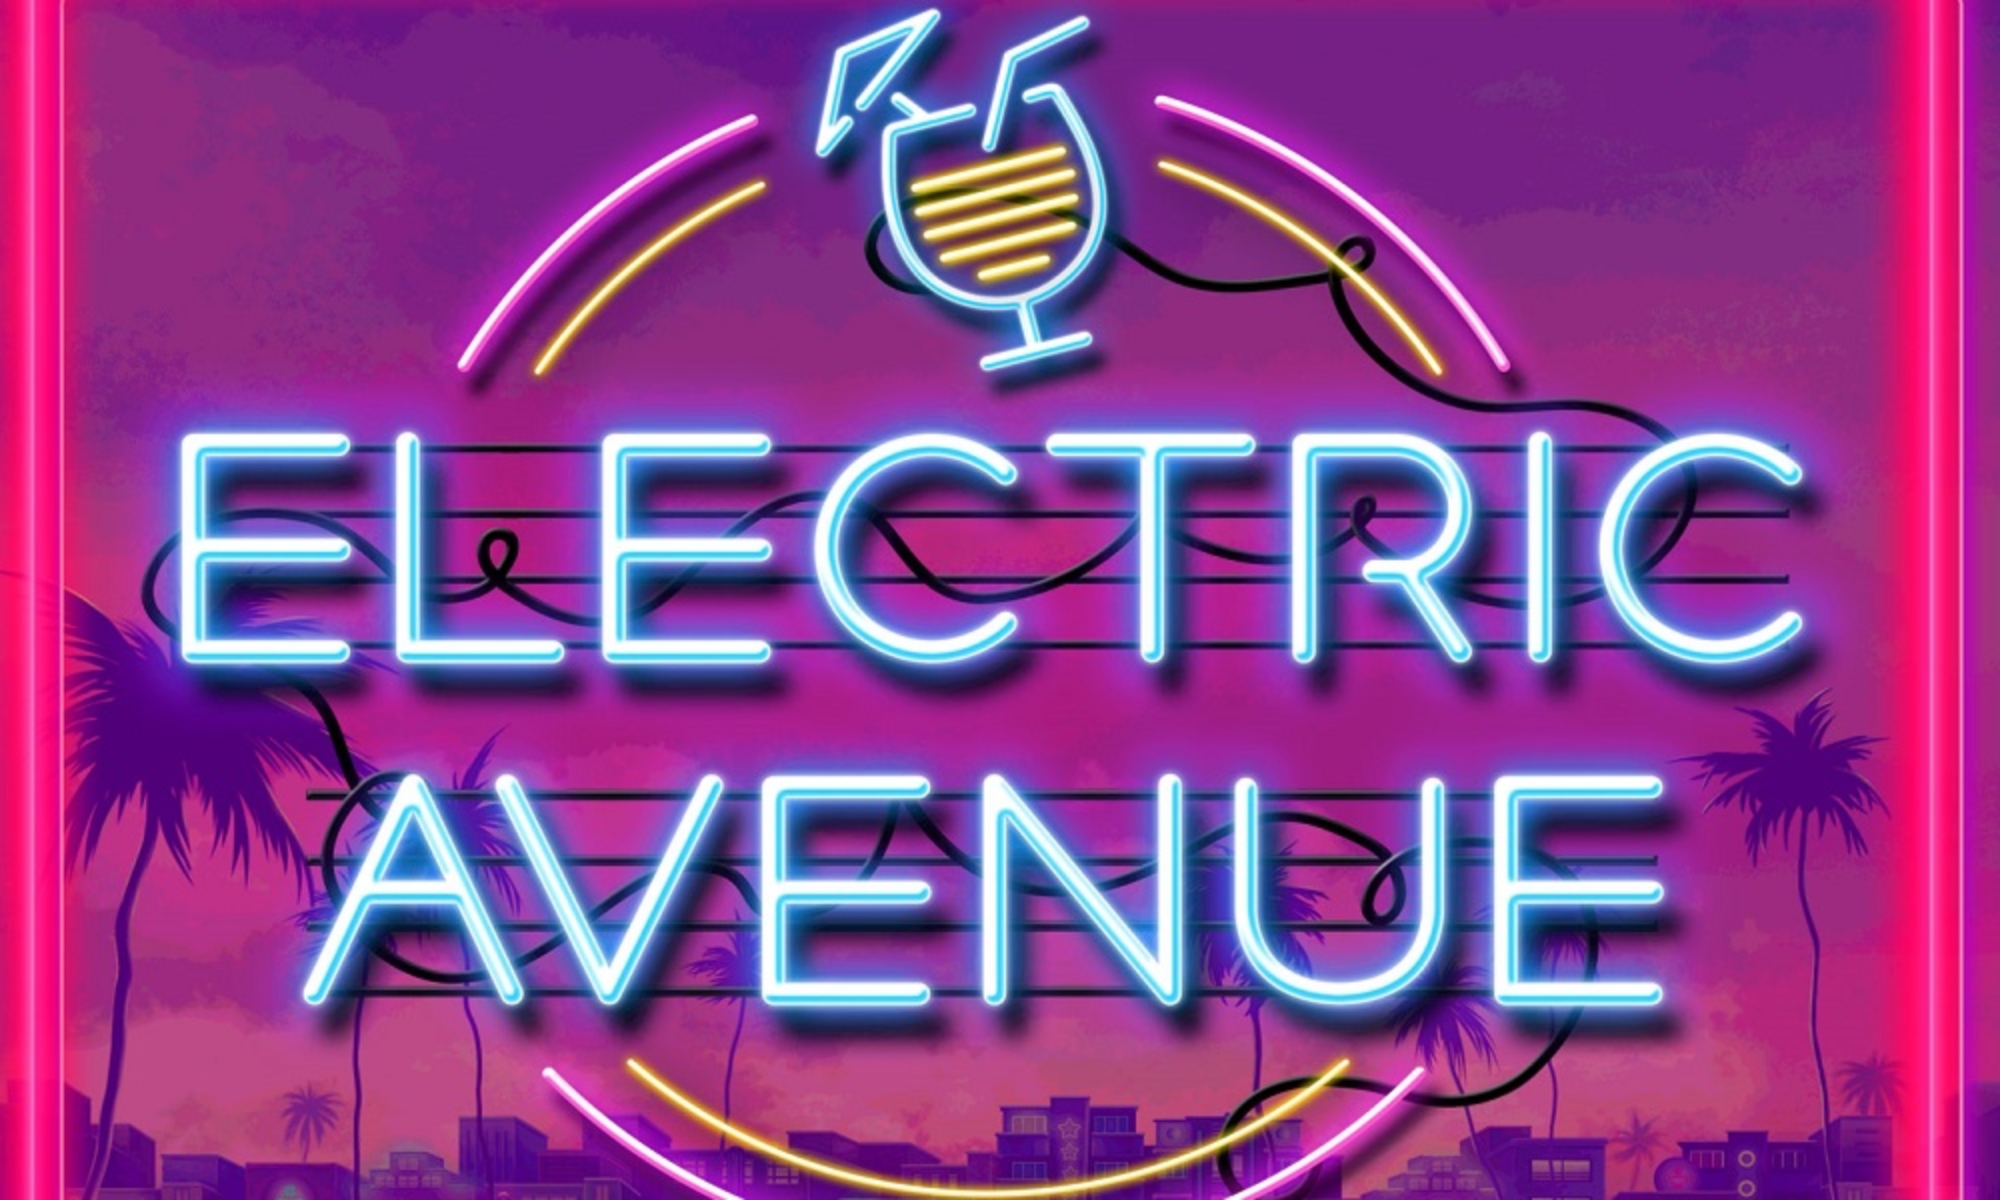 Electric Avenue demo